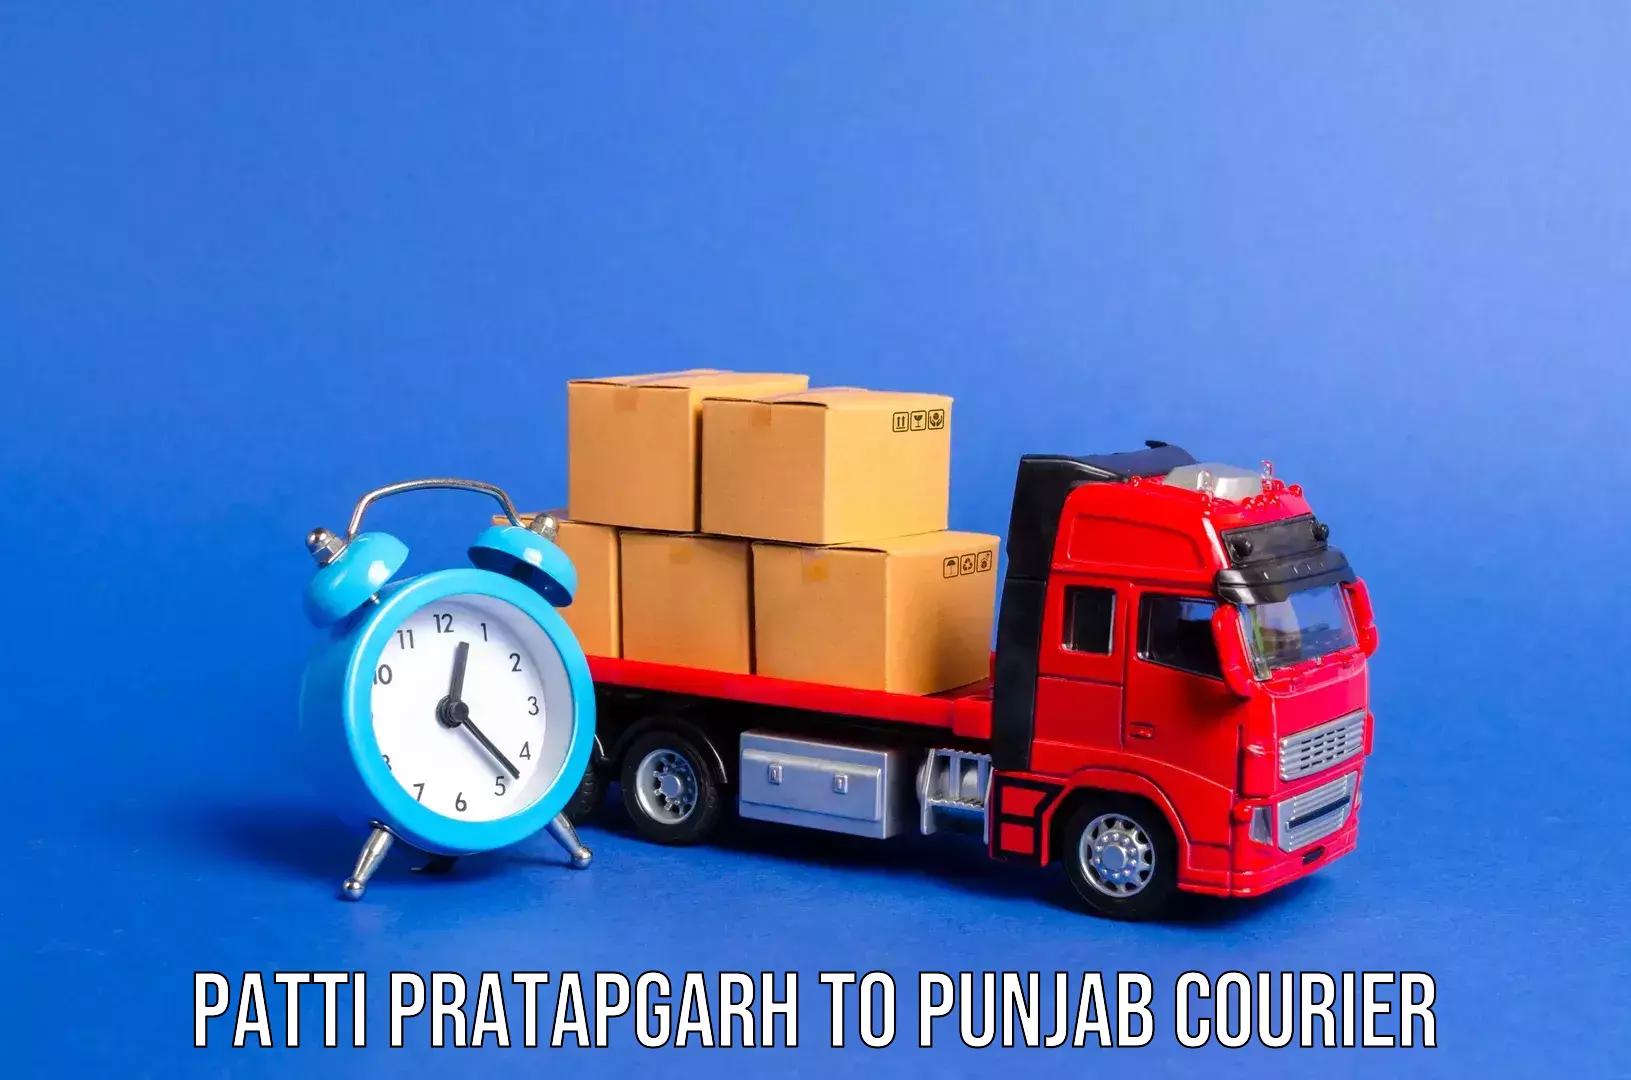 Baggage delivery management Patti Pratapgarh to Punjab